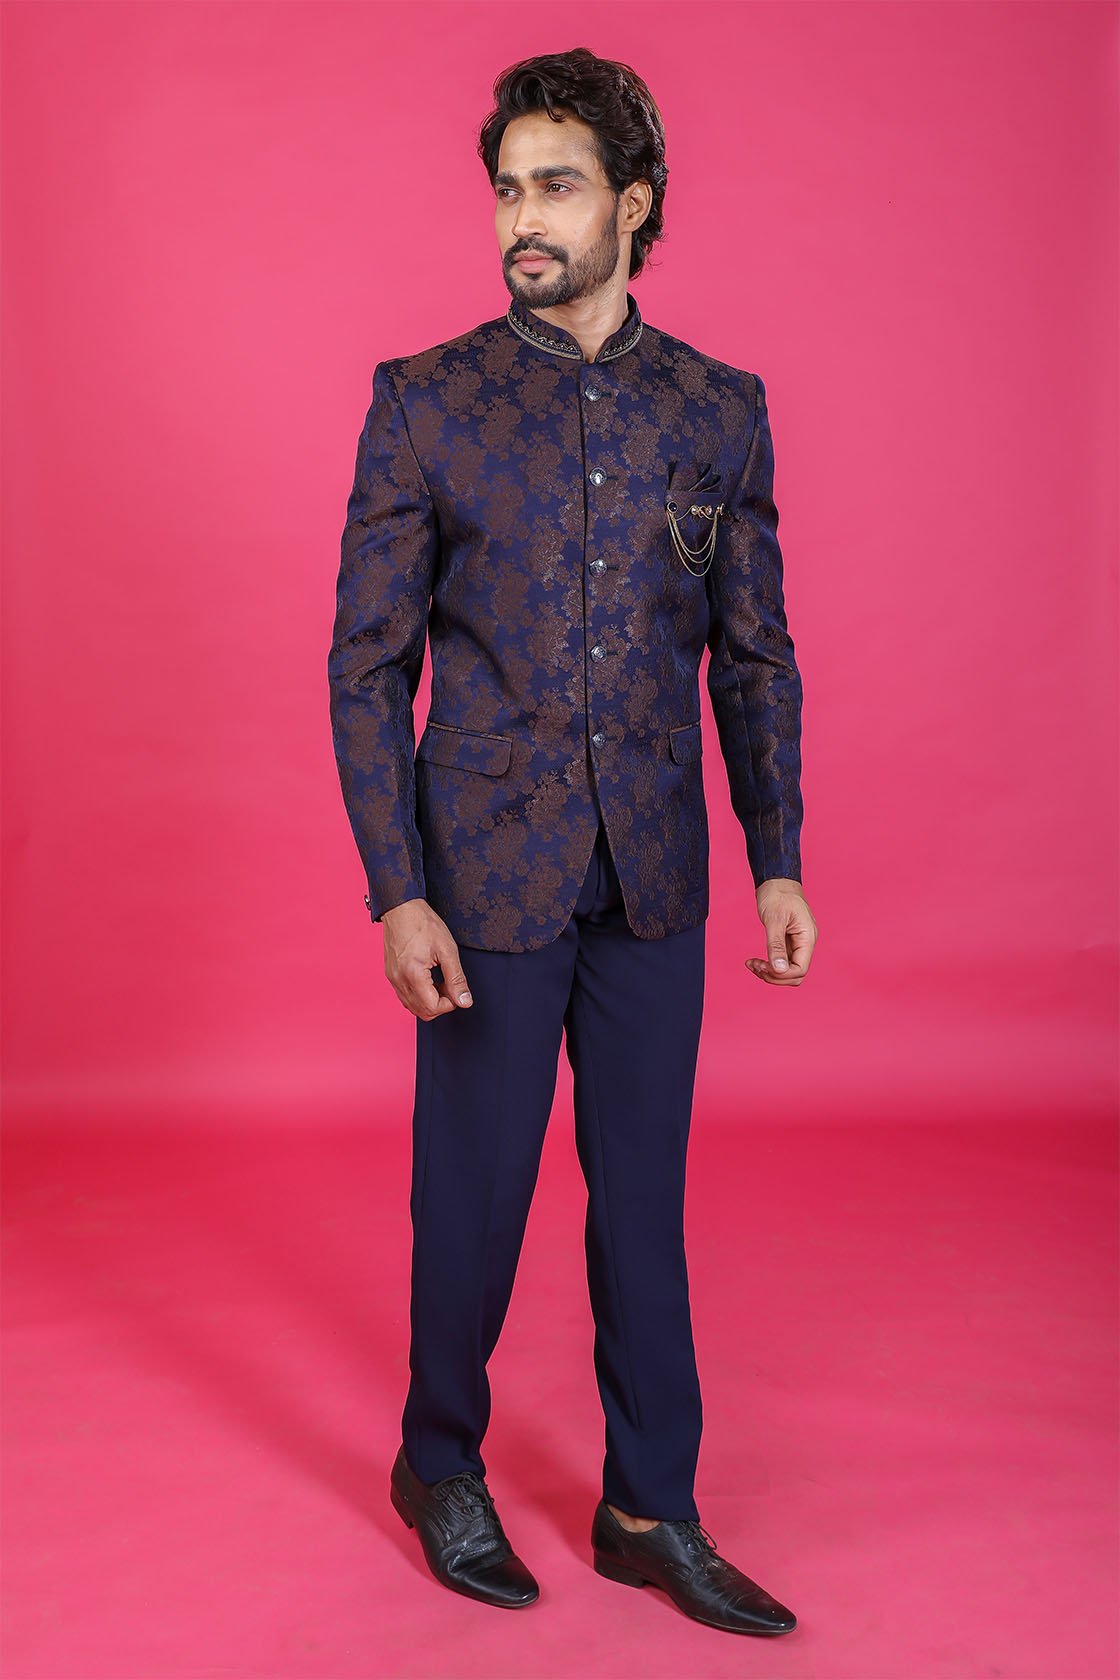 Buy Blue Printed Jodhpuri Suit Online at Best prices